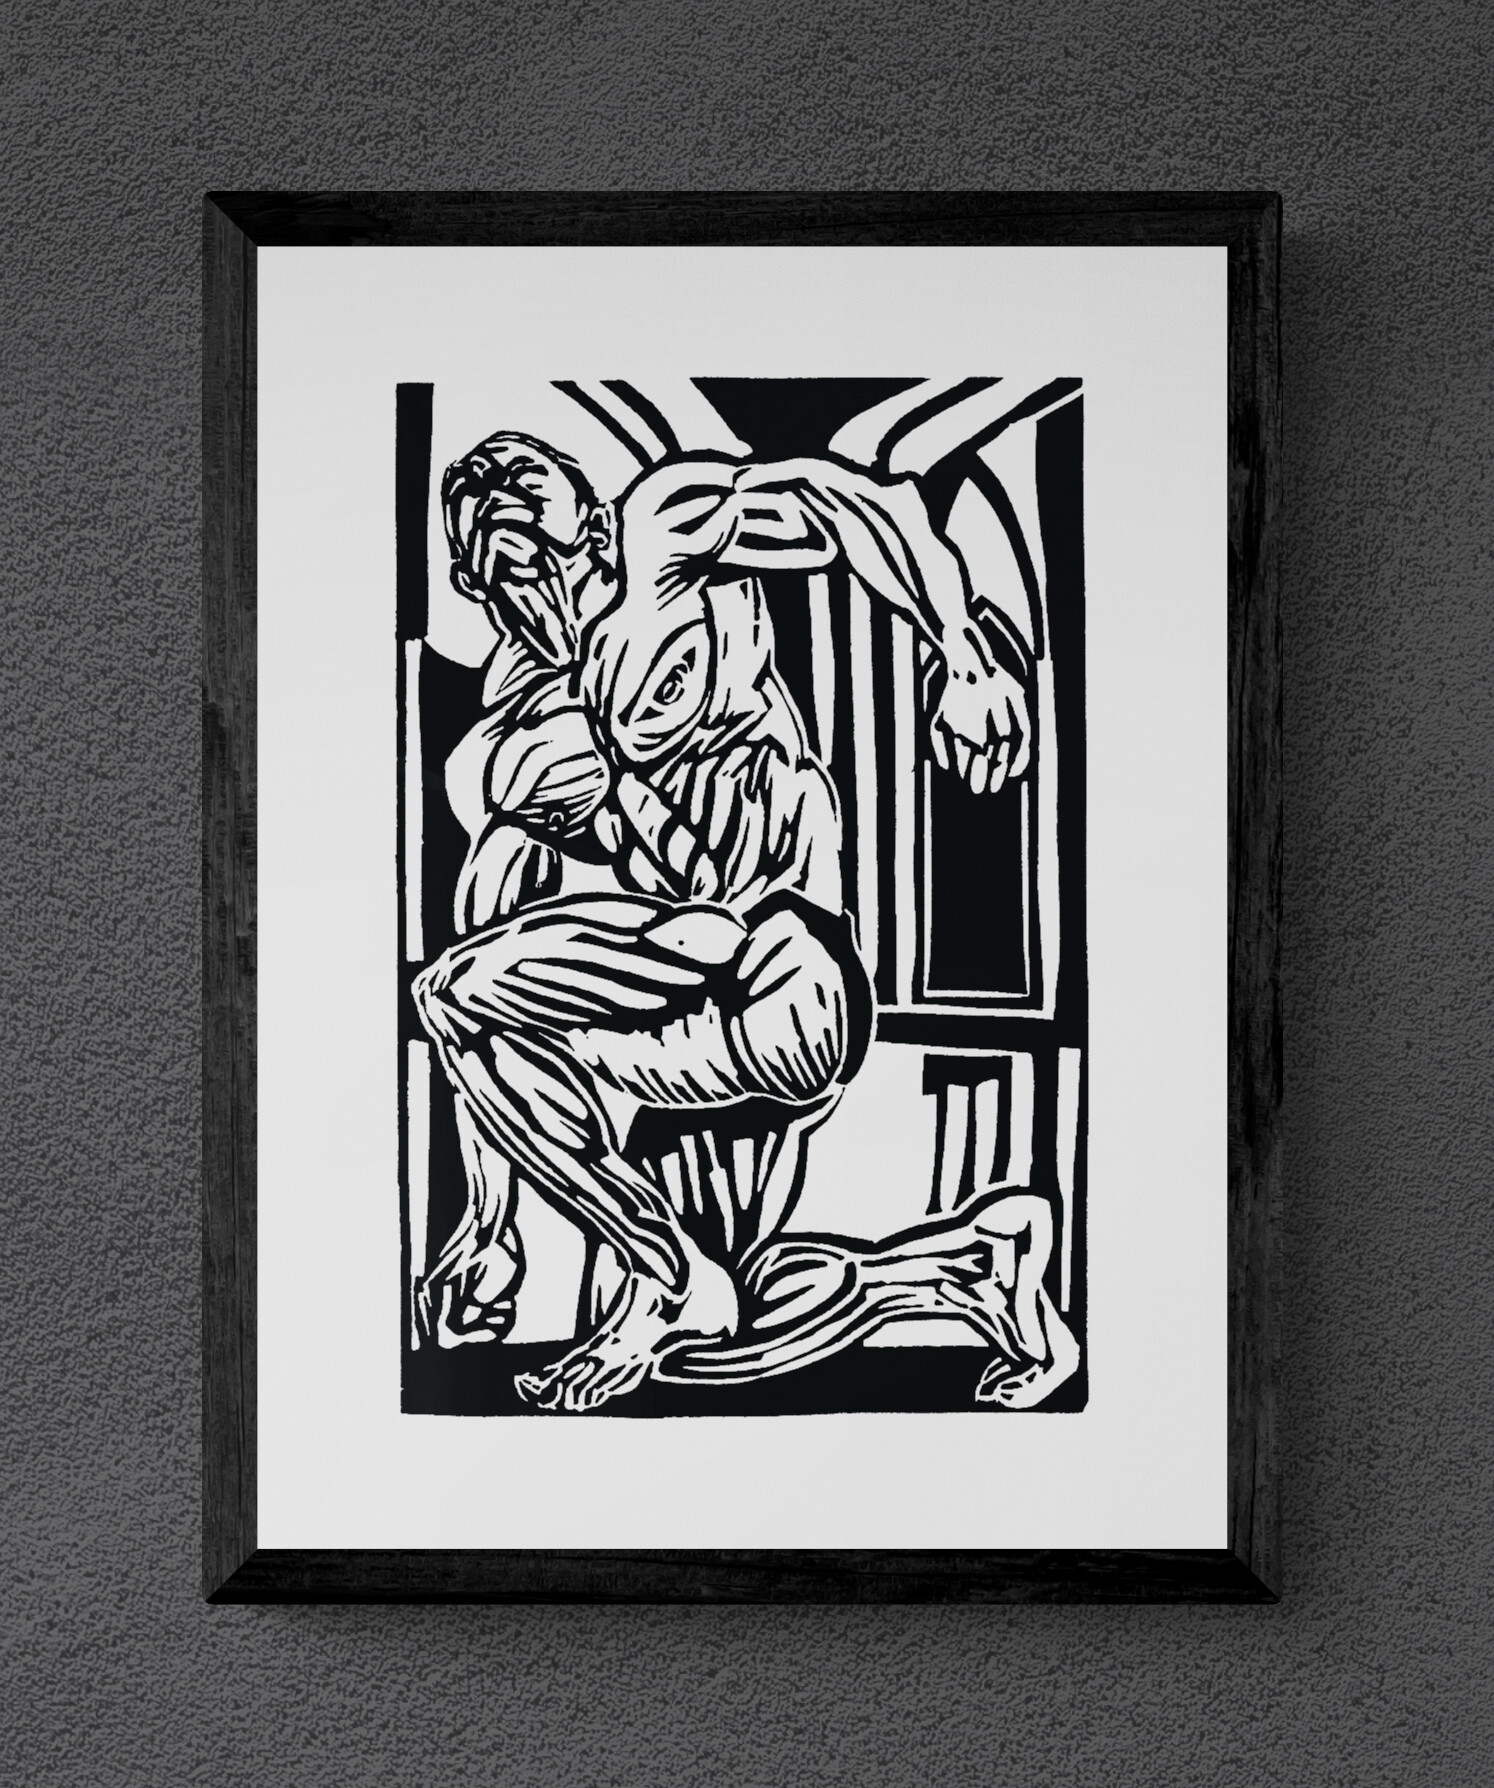 Kunstdruck "The Holy Musclepig" von Michael Goepferd, hochwertiger Kunstdruck